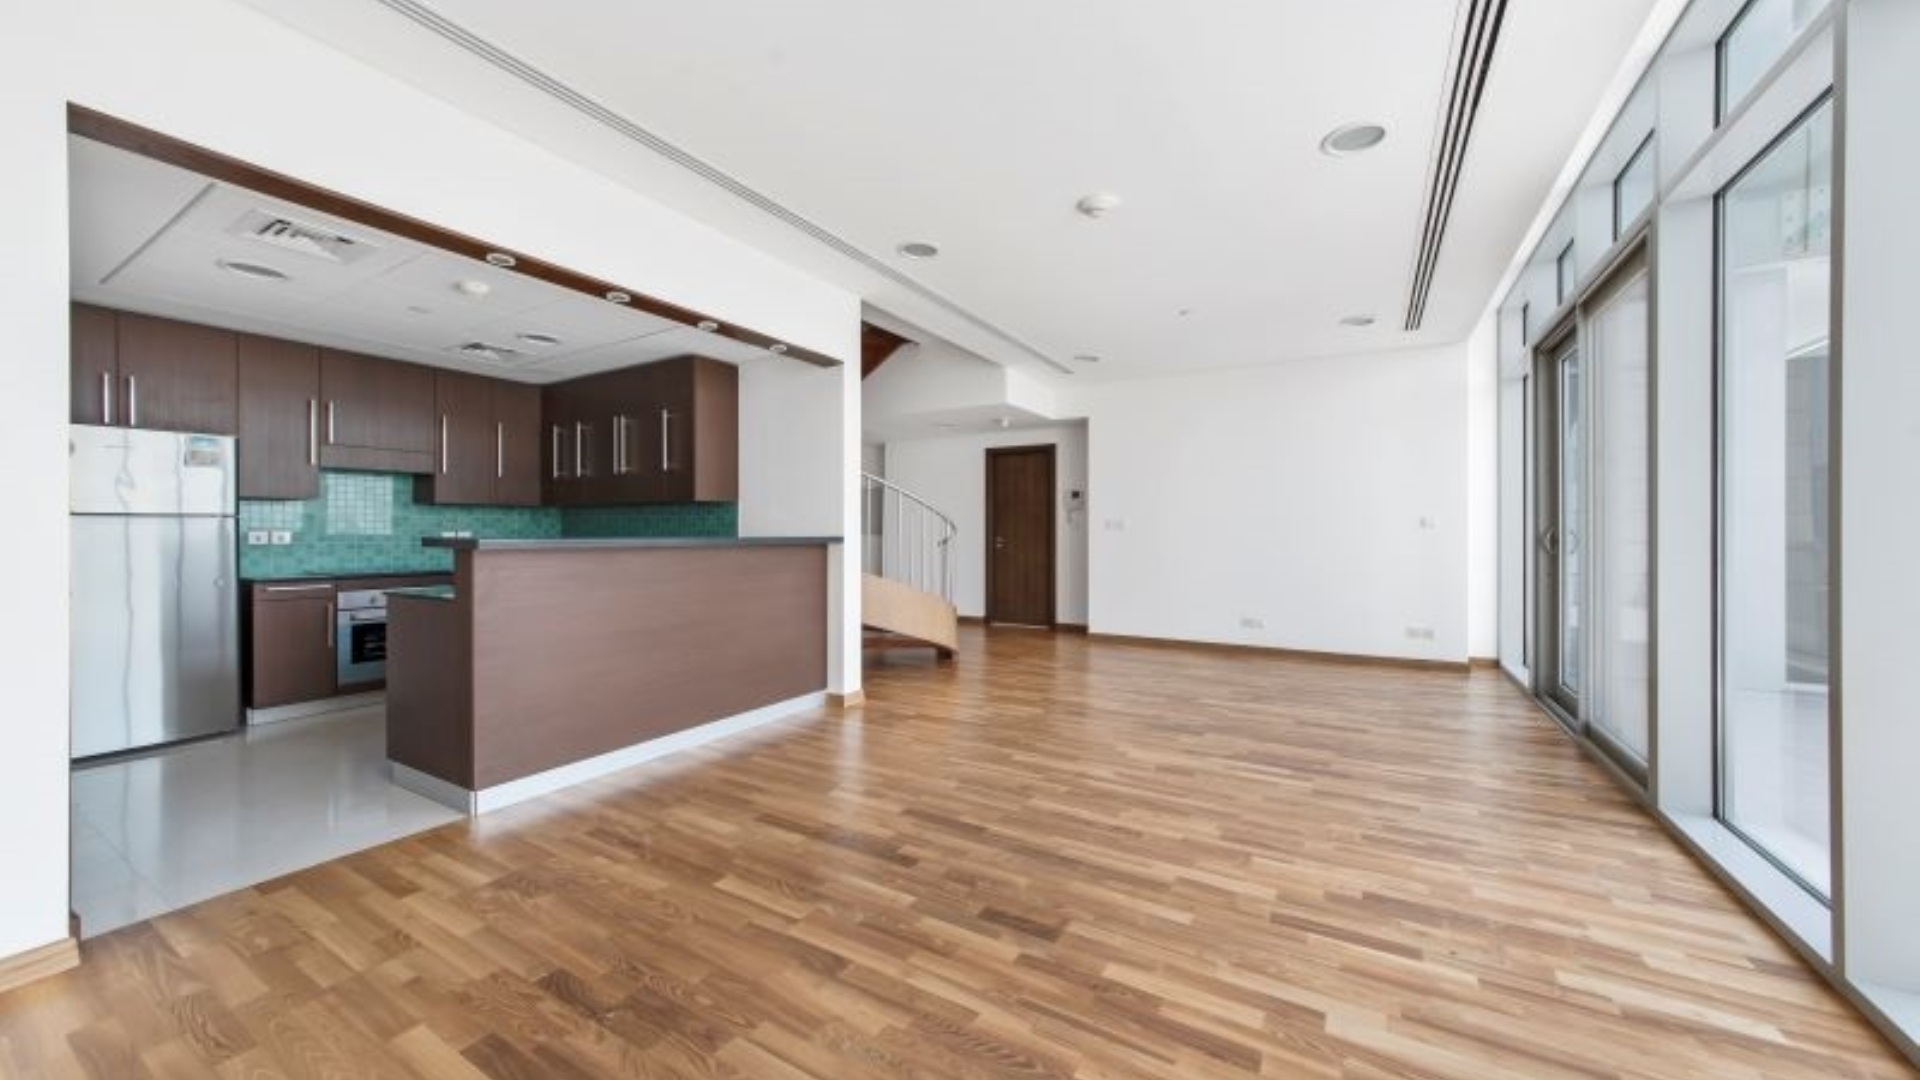 Apartment in DIFC, Dubai, UAE, 1 bedroom, 197 sq.m. No. 24648 - 2